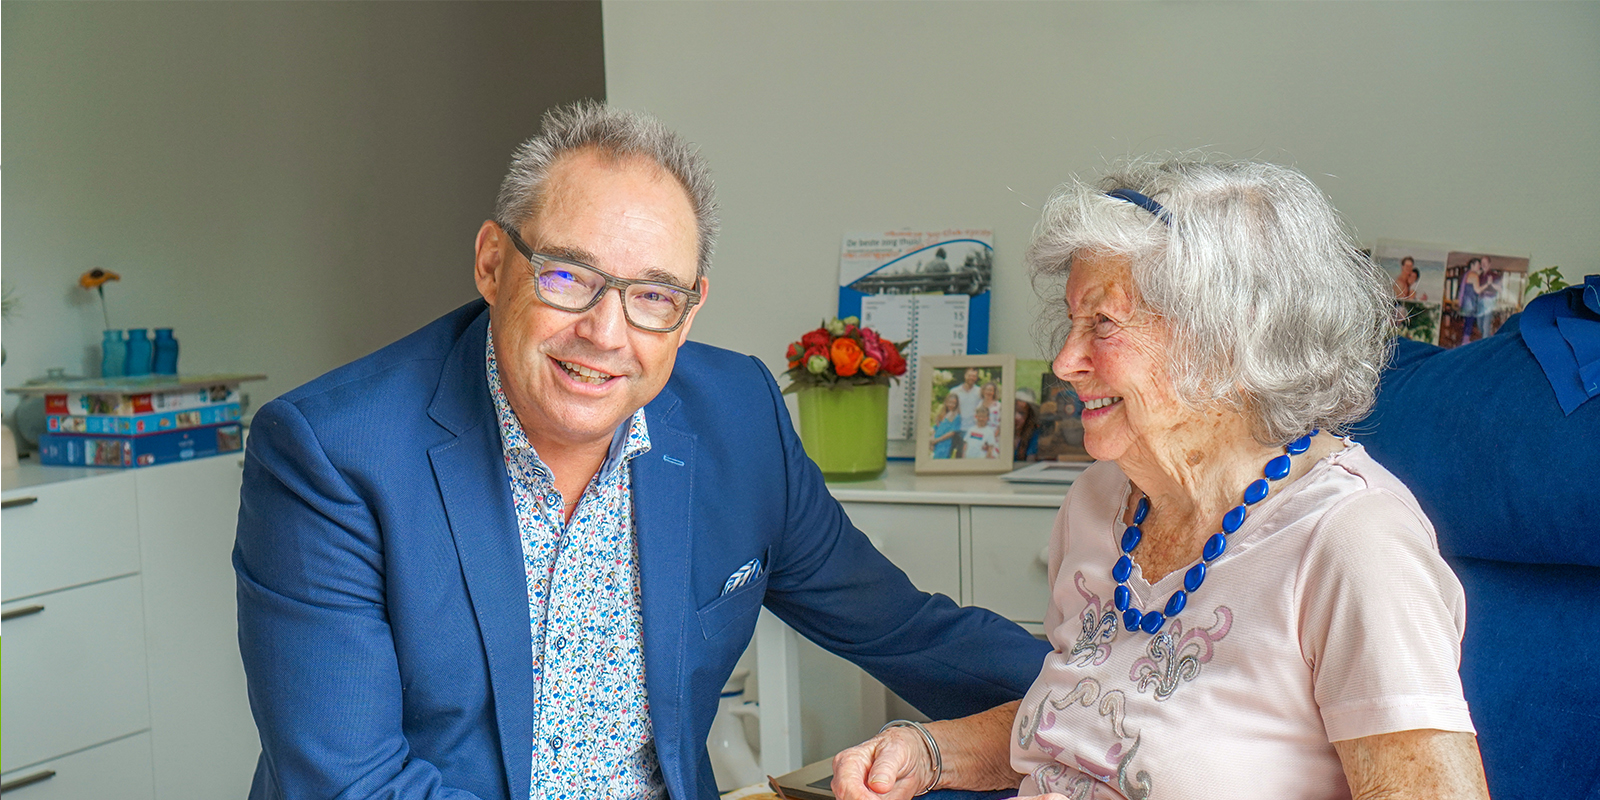 Specialist ouderengeneeskunde op bezoek bij een bewoner met dementie van Dagelijks Leven, kleinschalige woonzorglocatie. Hij lacht naar de camera, de bewoonster lacht naar de specialist, die onderdeel is van de vakgroep Advies, Behandeling en Begeleiding.